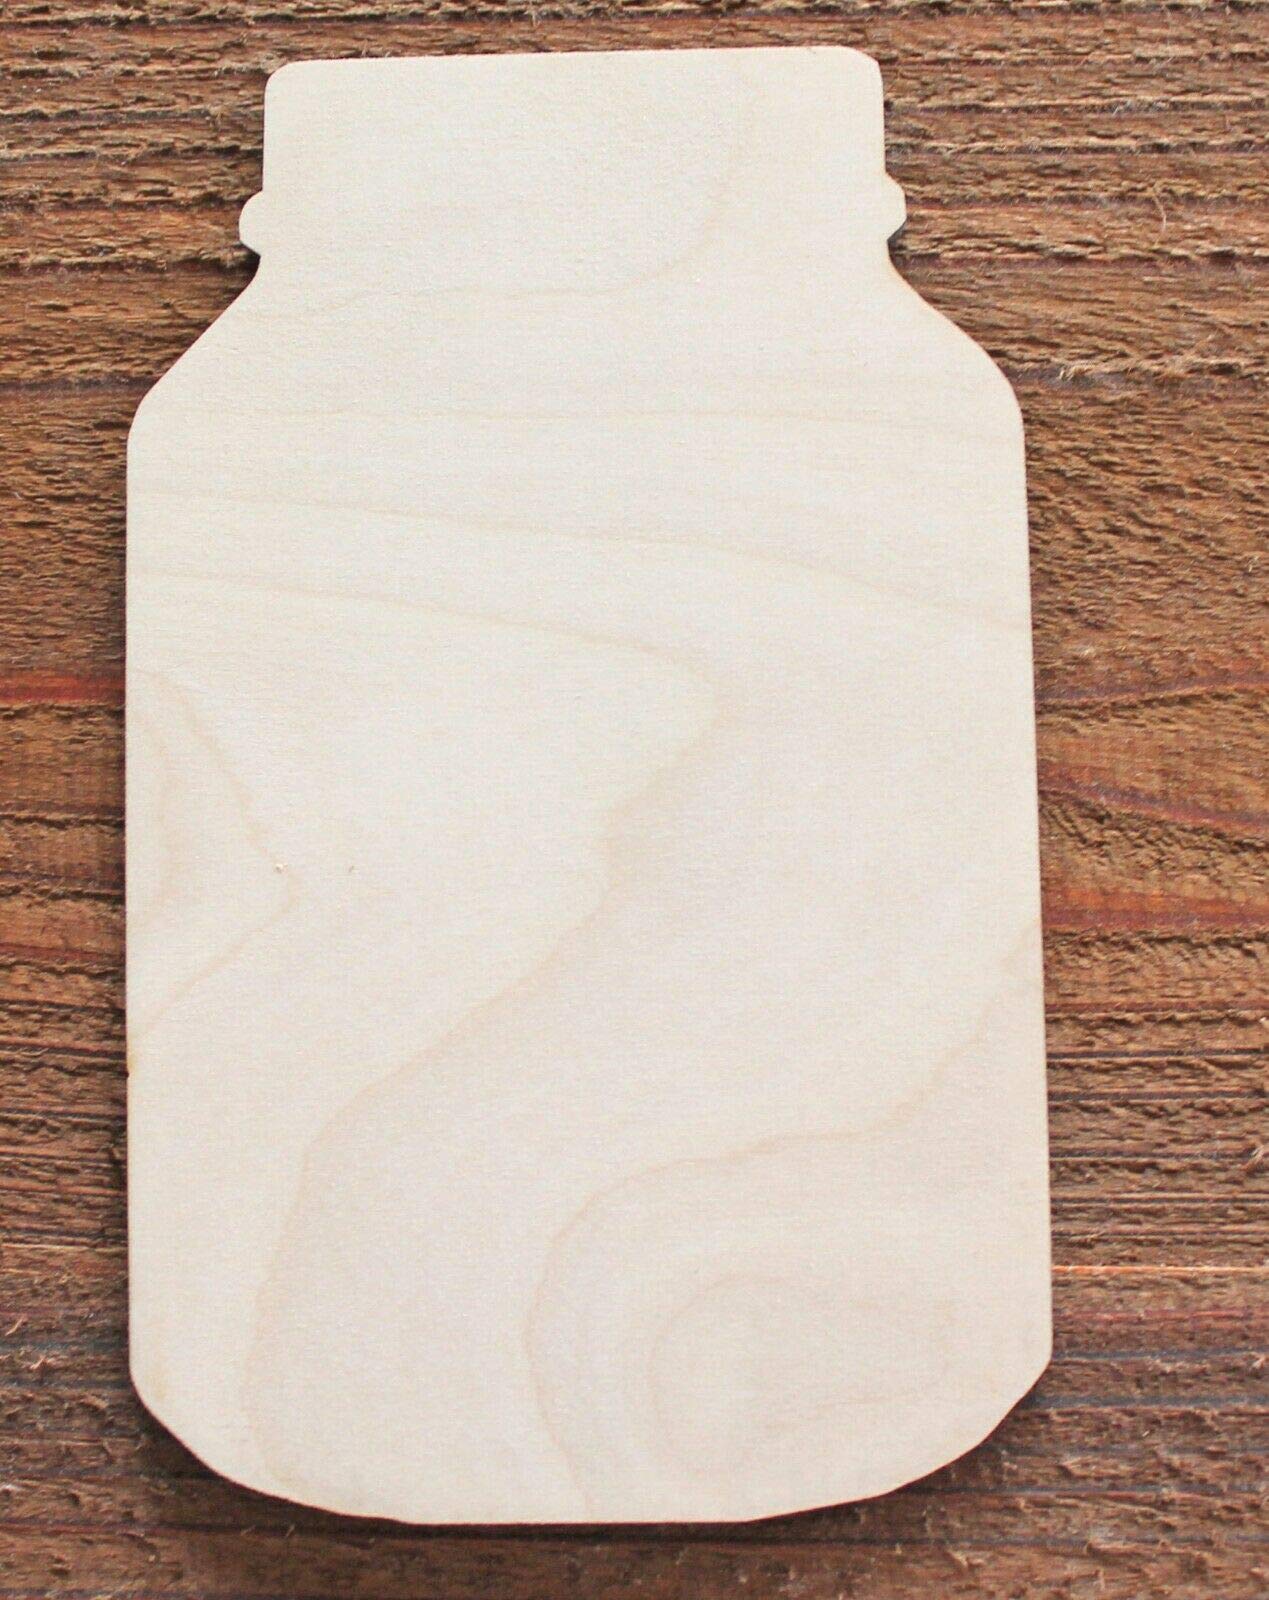 8" Mason Jar Unfinished Wood Cutout Cut Outs Crafts